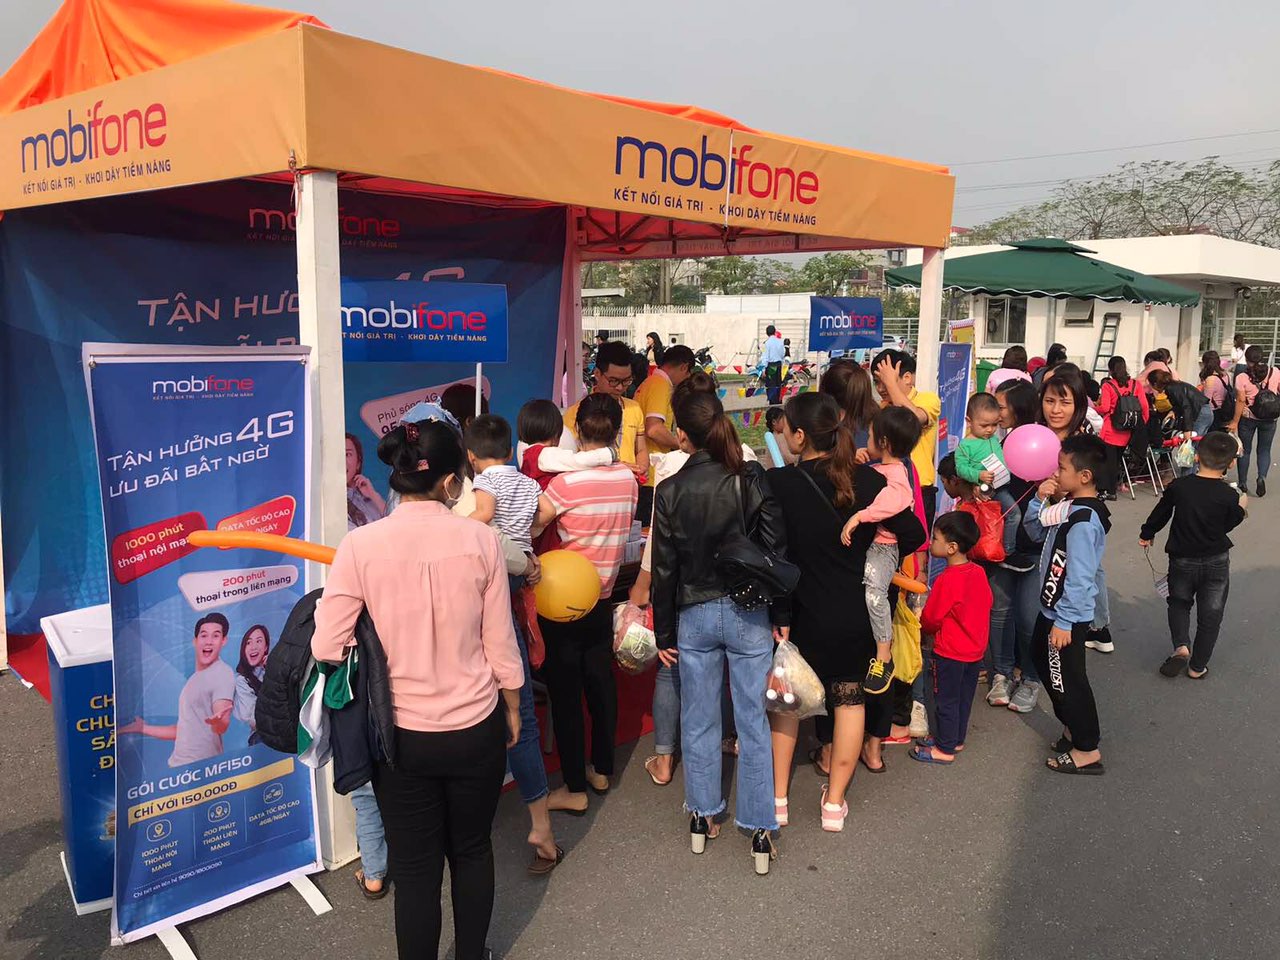 MobiFone vừa tung ra chiến dịch bán hàng hấp dẫn như thay Sim 4G miễn phí, ưu đãi gói cước D5 hay tặng quà khách hàng tải App My MobiFone, tặng data khách hàng khi check in tại các điểm bán hàng MobiFone trên toàn quốc